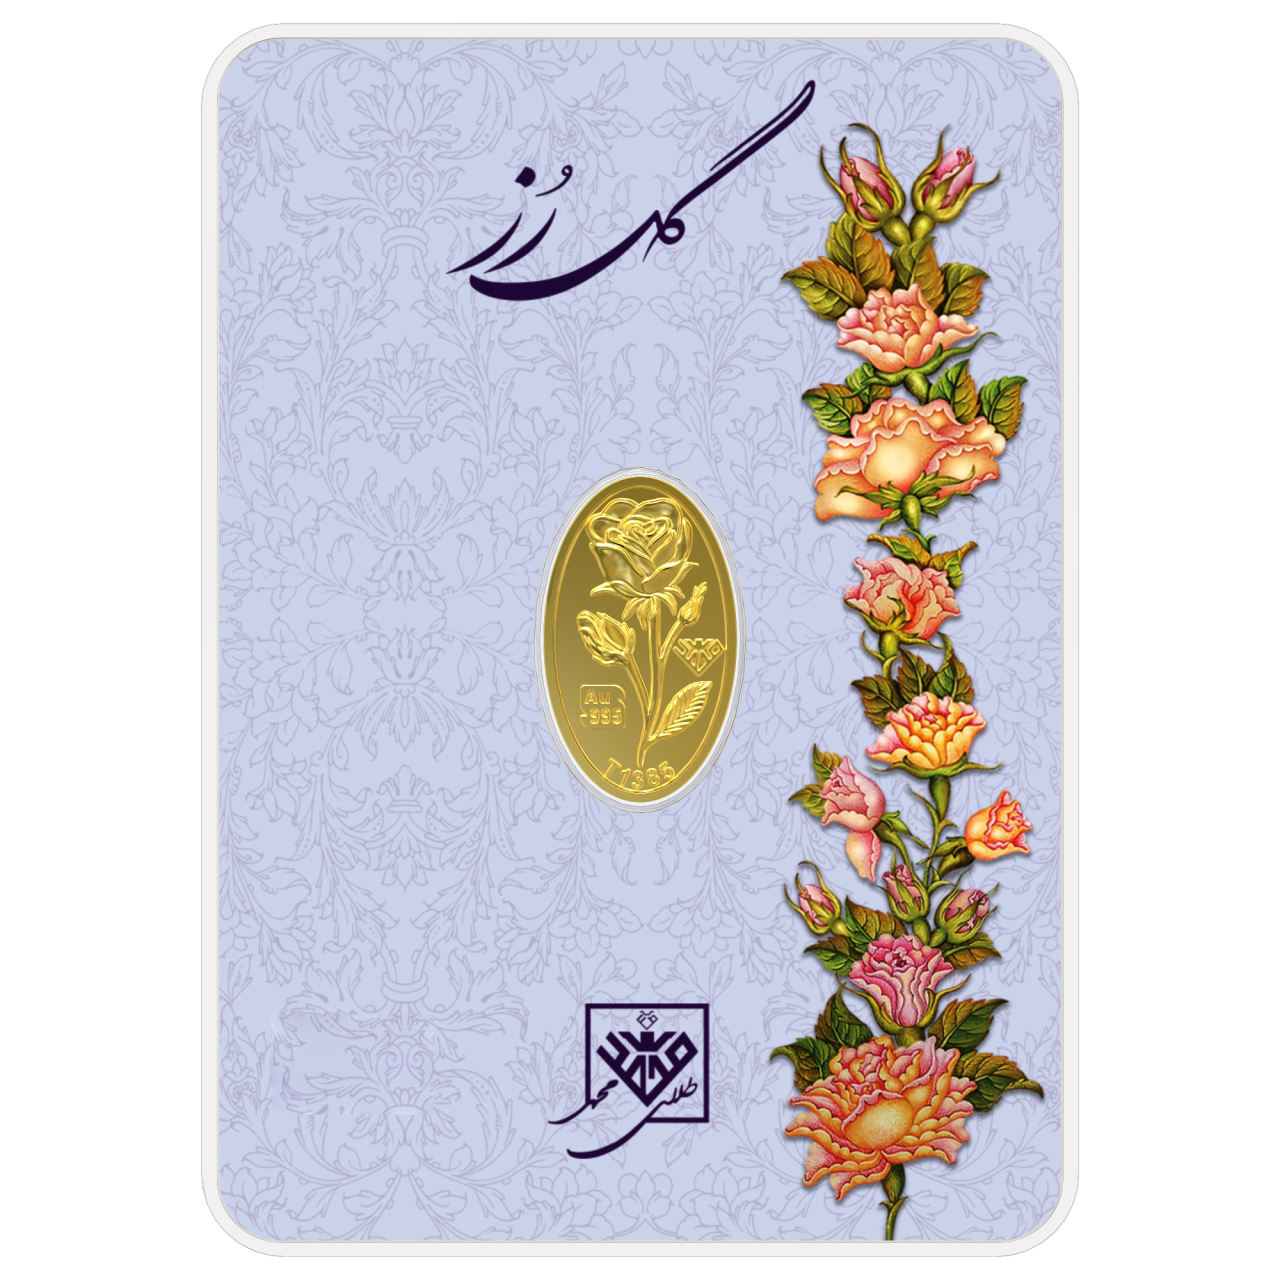 آنباکس شمش طلا 24 عیار طلای محمد طرح گل رز کد 500 توسط حامد مجد در تاریخ ۲۵ تیر ۱۳۹۹